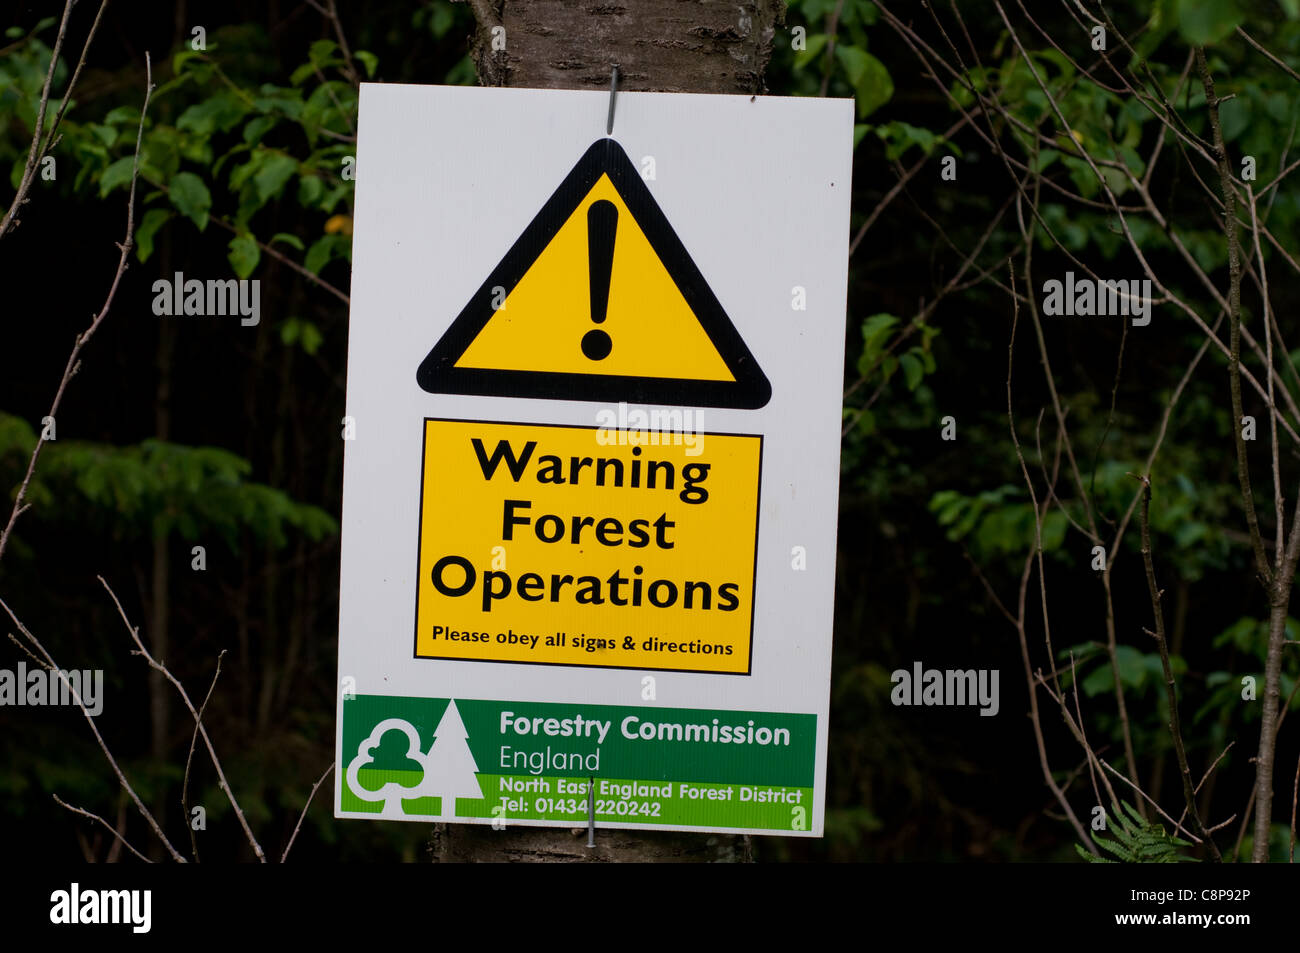 Una operazione forestale segno di avvertimento del pericolo potenziale delle operazioni forestali in corso nella foresta di hamsterley nella contea di Durham in Inghilterra del nord est. Foto Stock